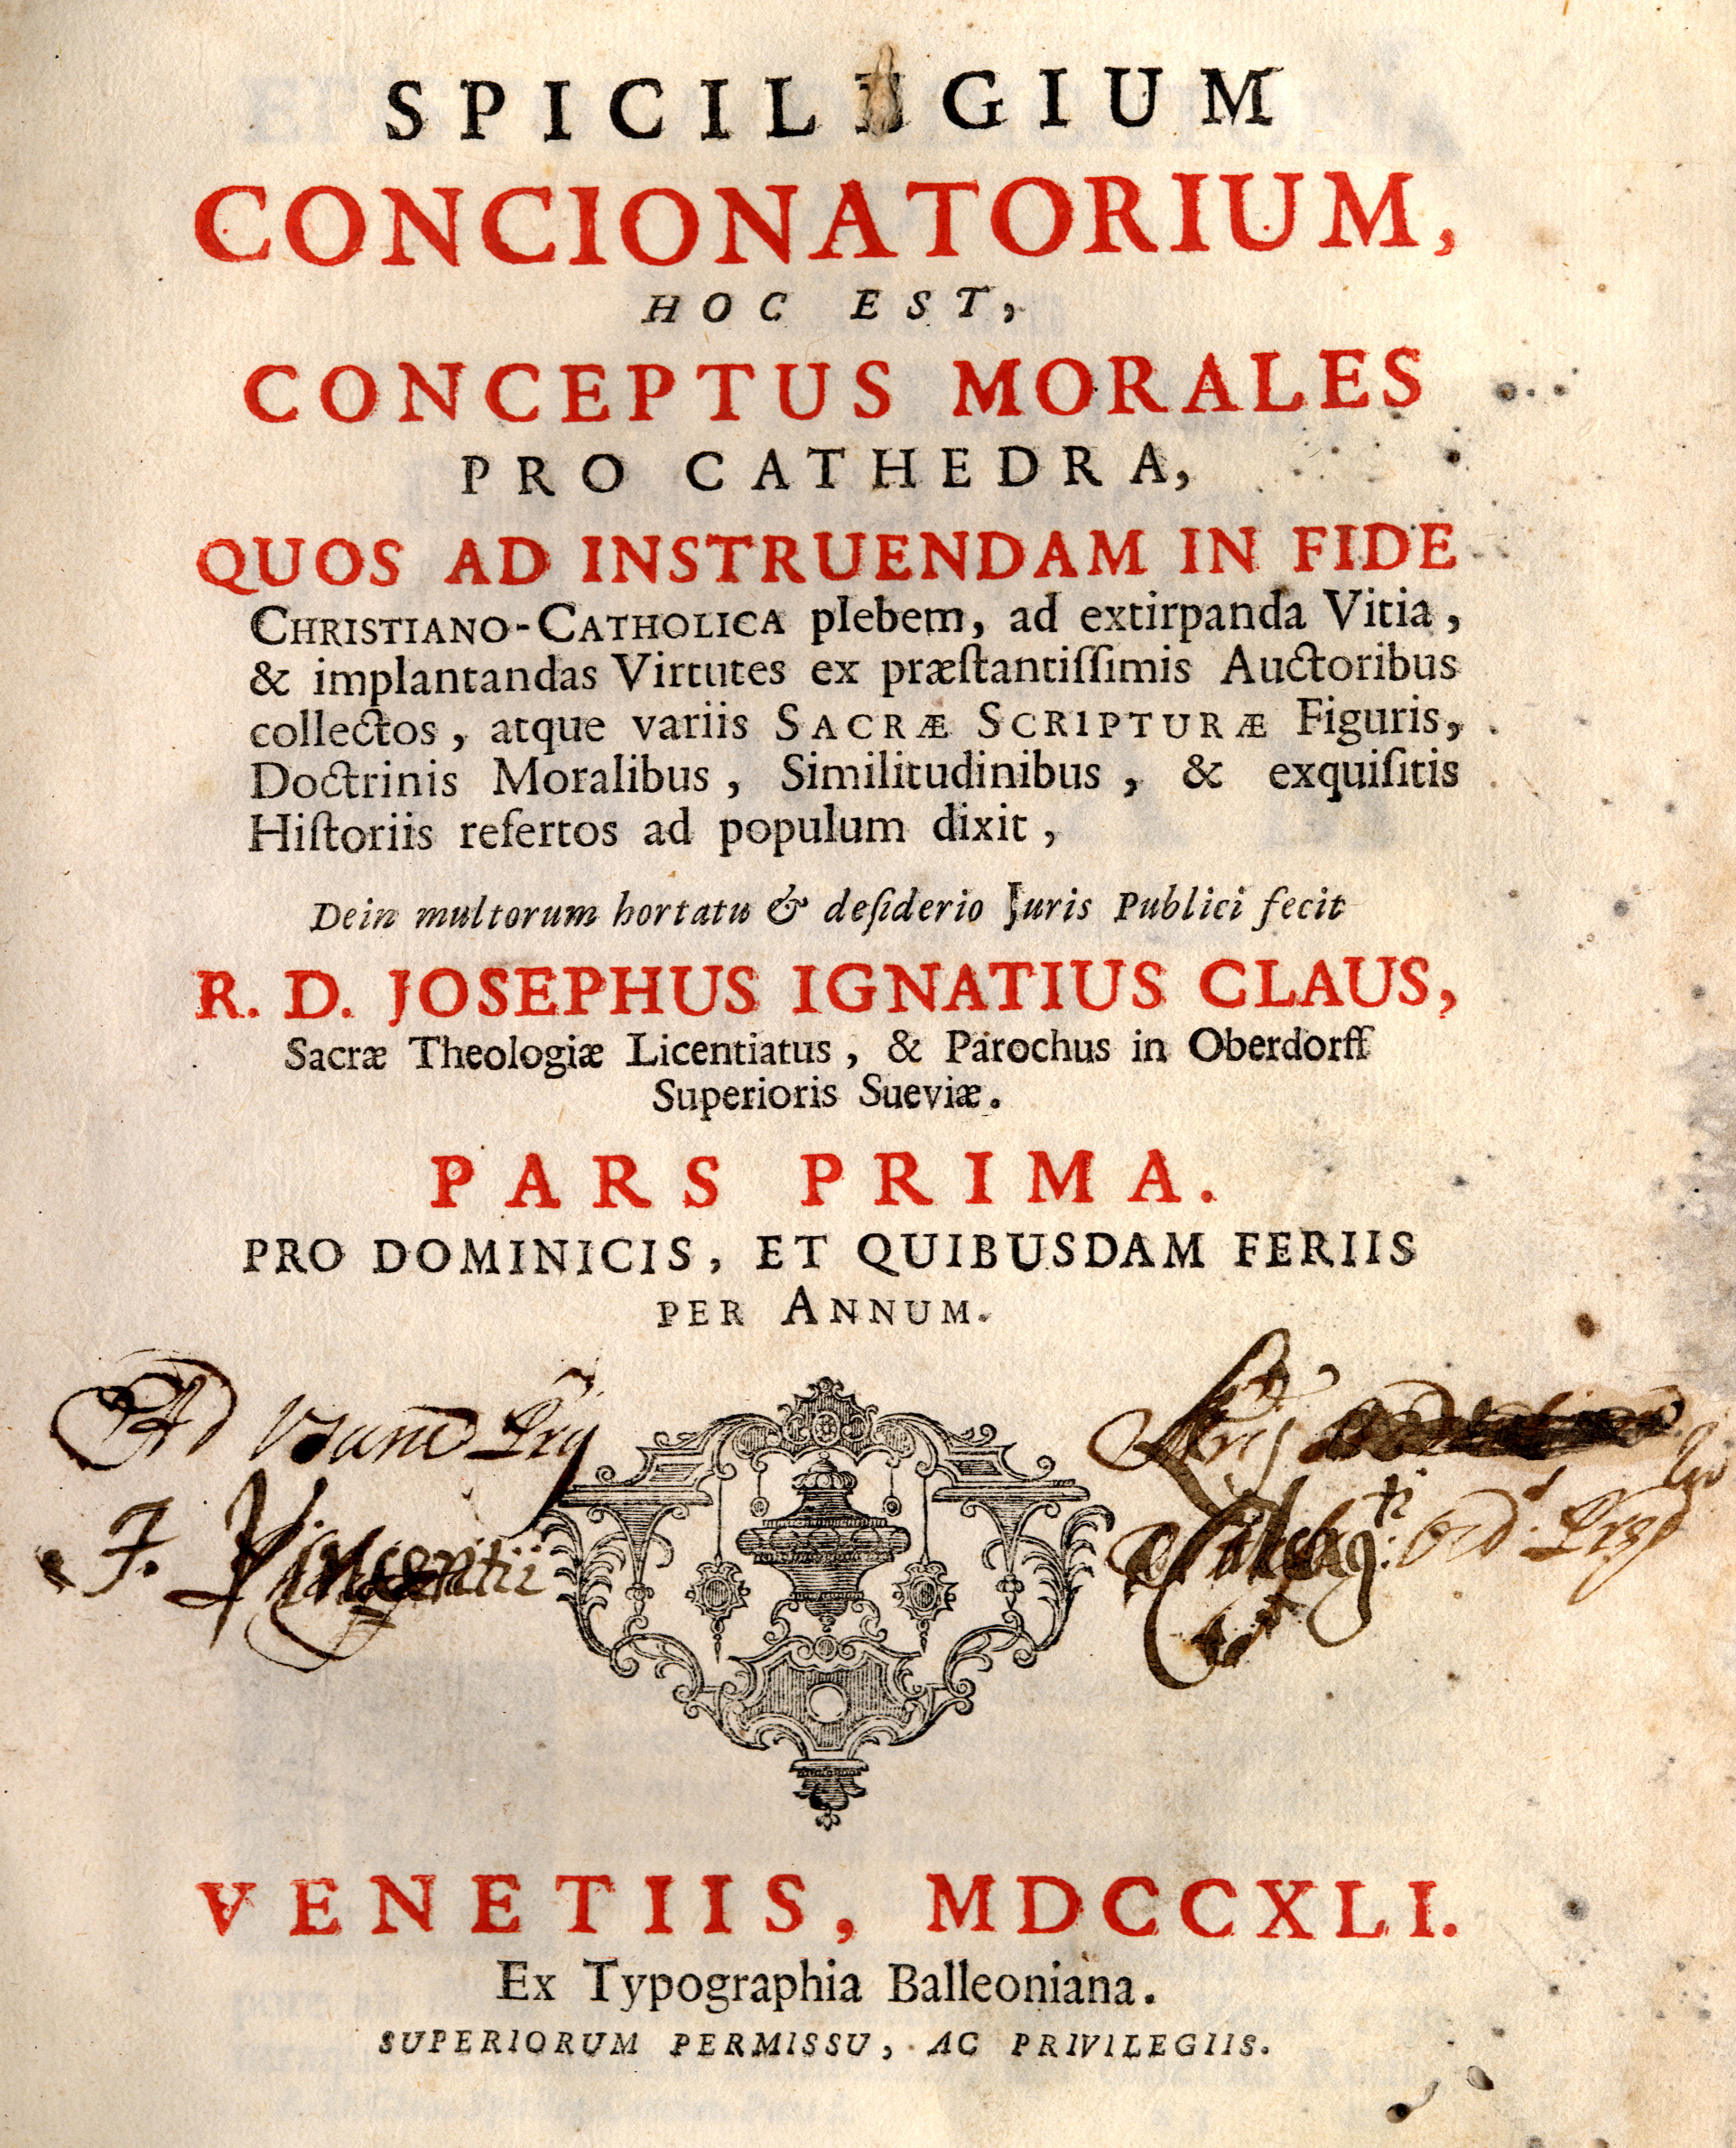 Claus Spicilegium 1741 Titel